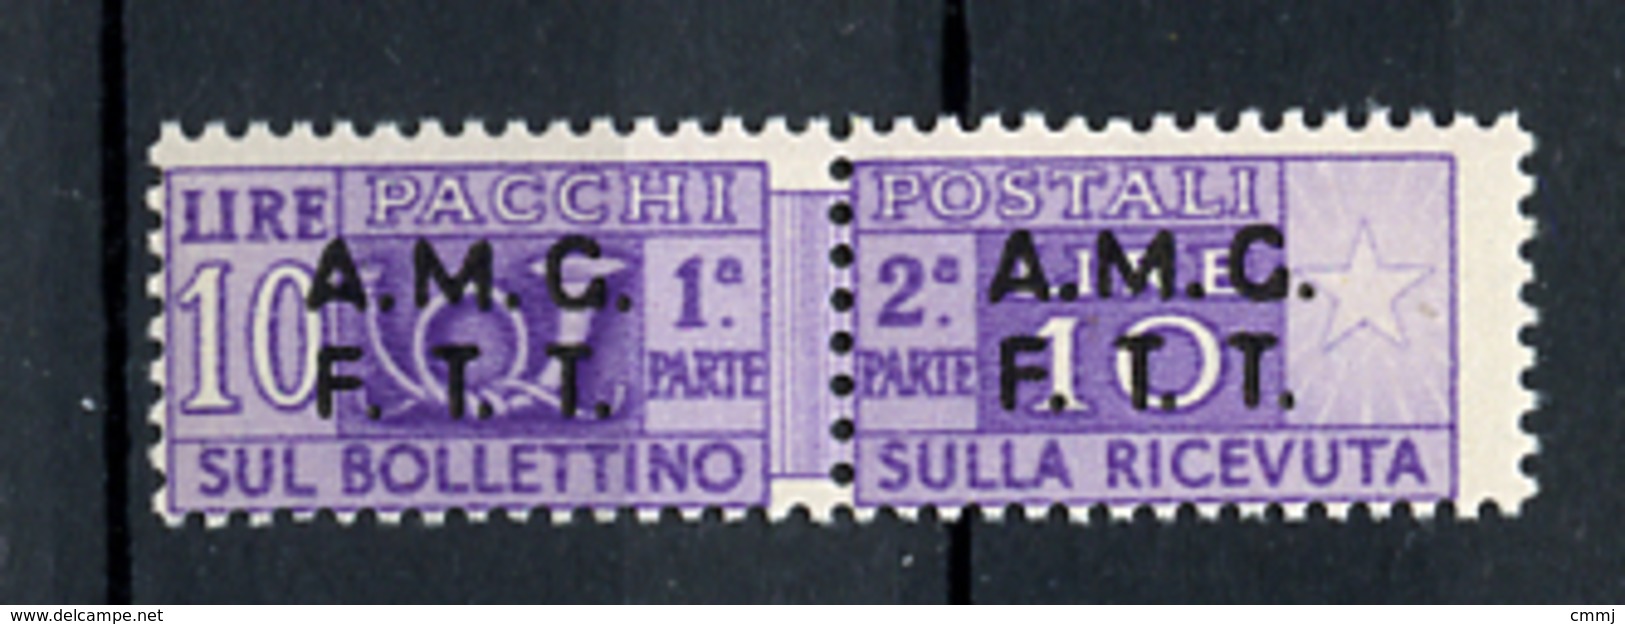 1947 -  TRIESTE  A -  Italia - Italy - Italie - Italien - Catg. Unif. .  6  -  NH - (B15012012...) - Postpaketen/concessie